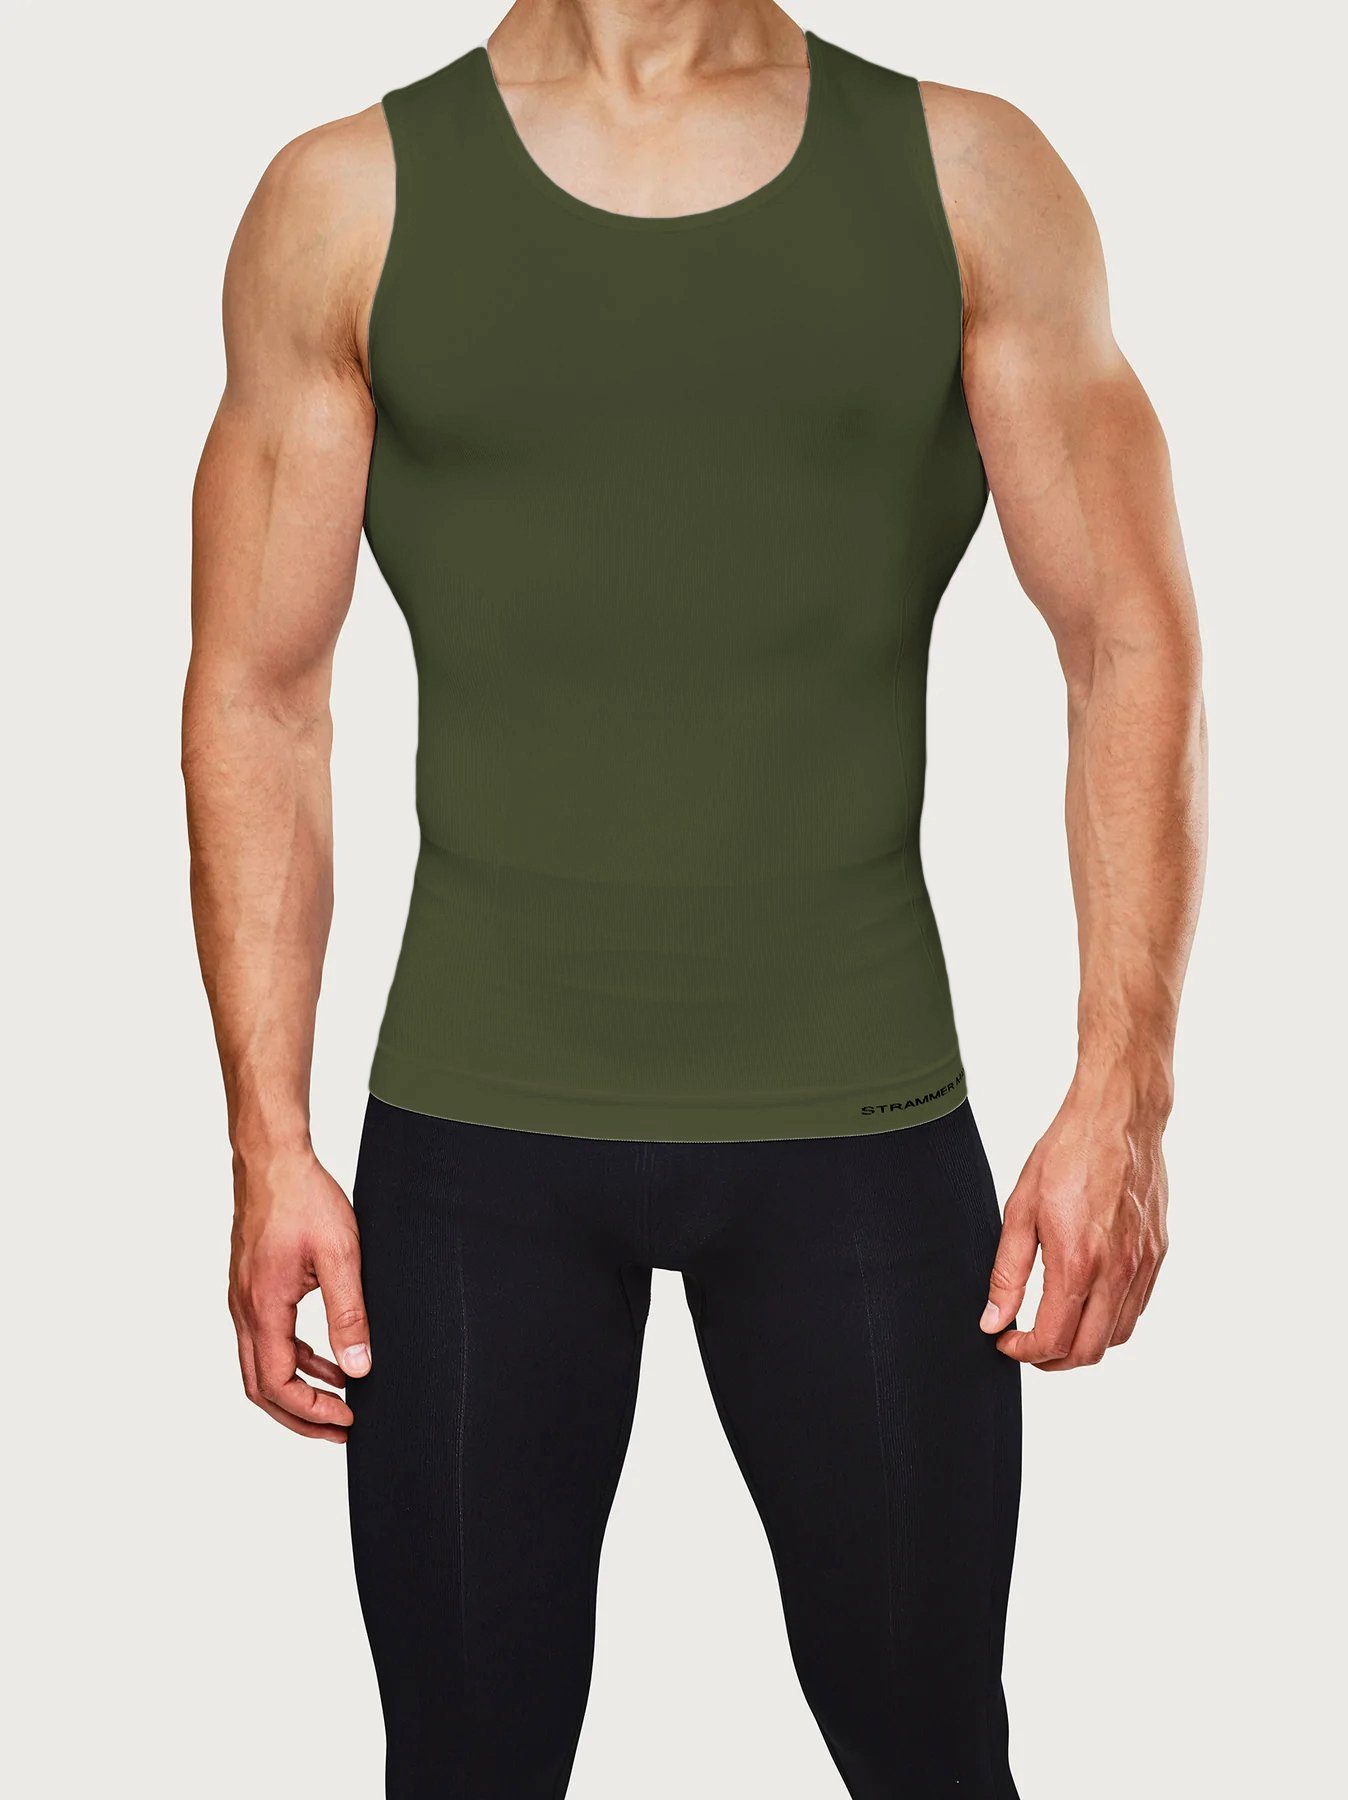 Strammer Max Performance® Kompressionsshirt Compression Tank Top Shapewear, unterstützt die Haltung Military Green